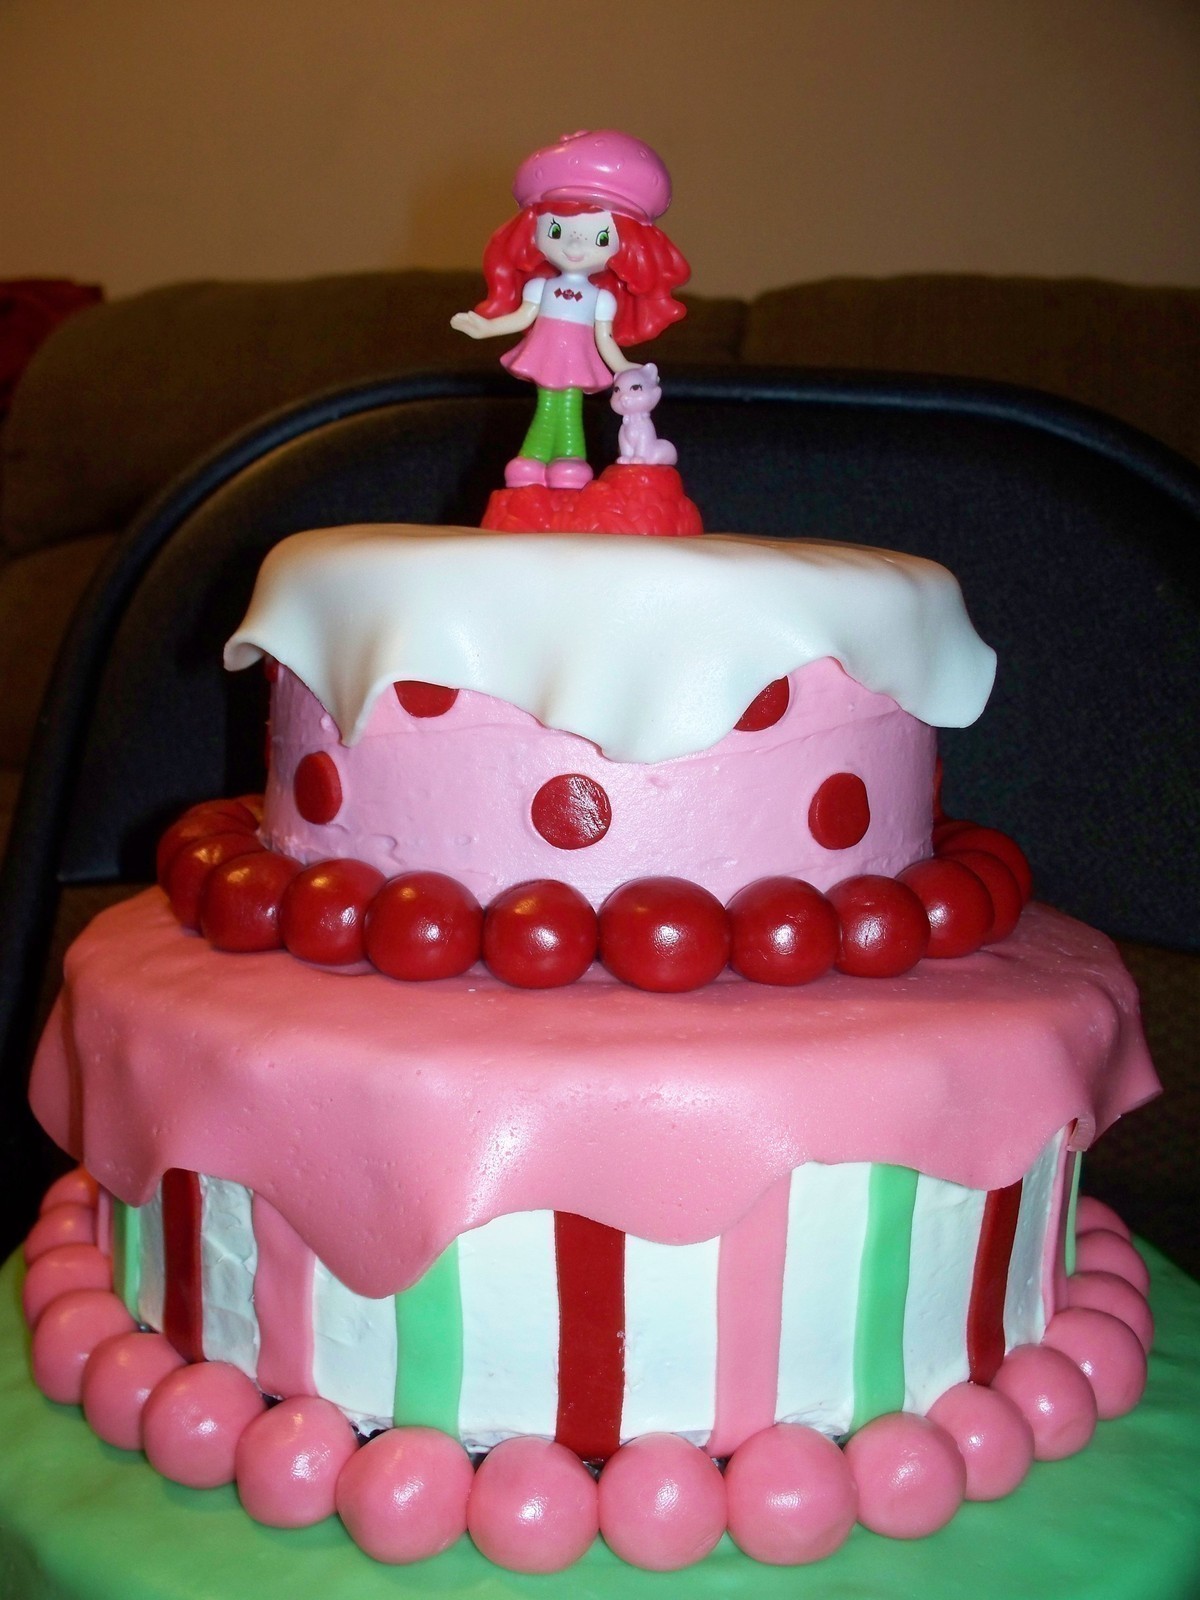 Strawberry Shortcake Decorated Cake